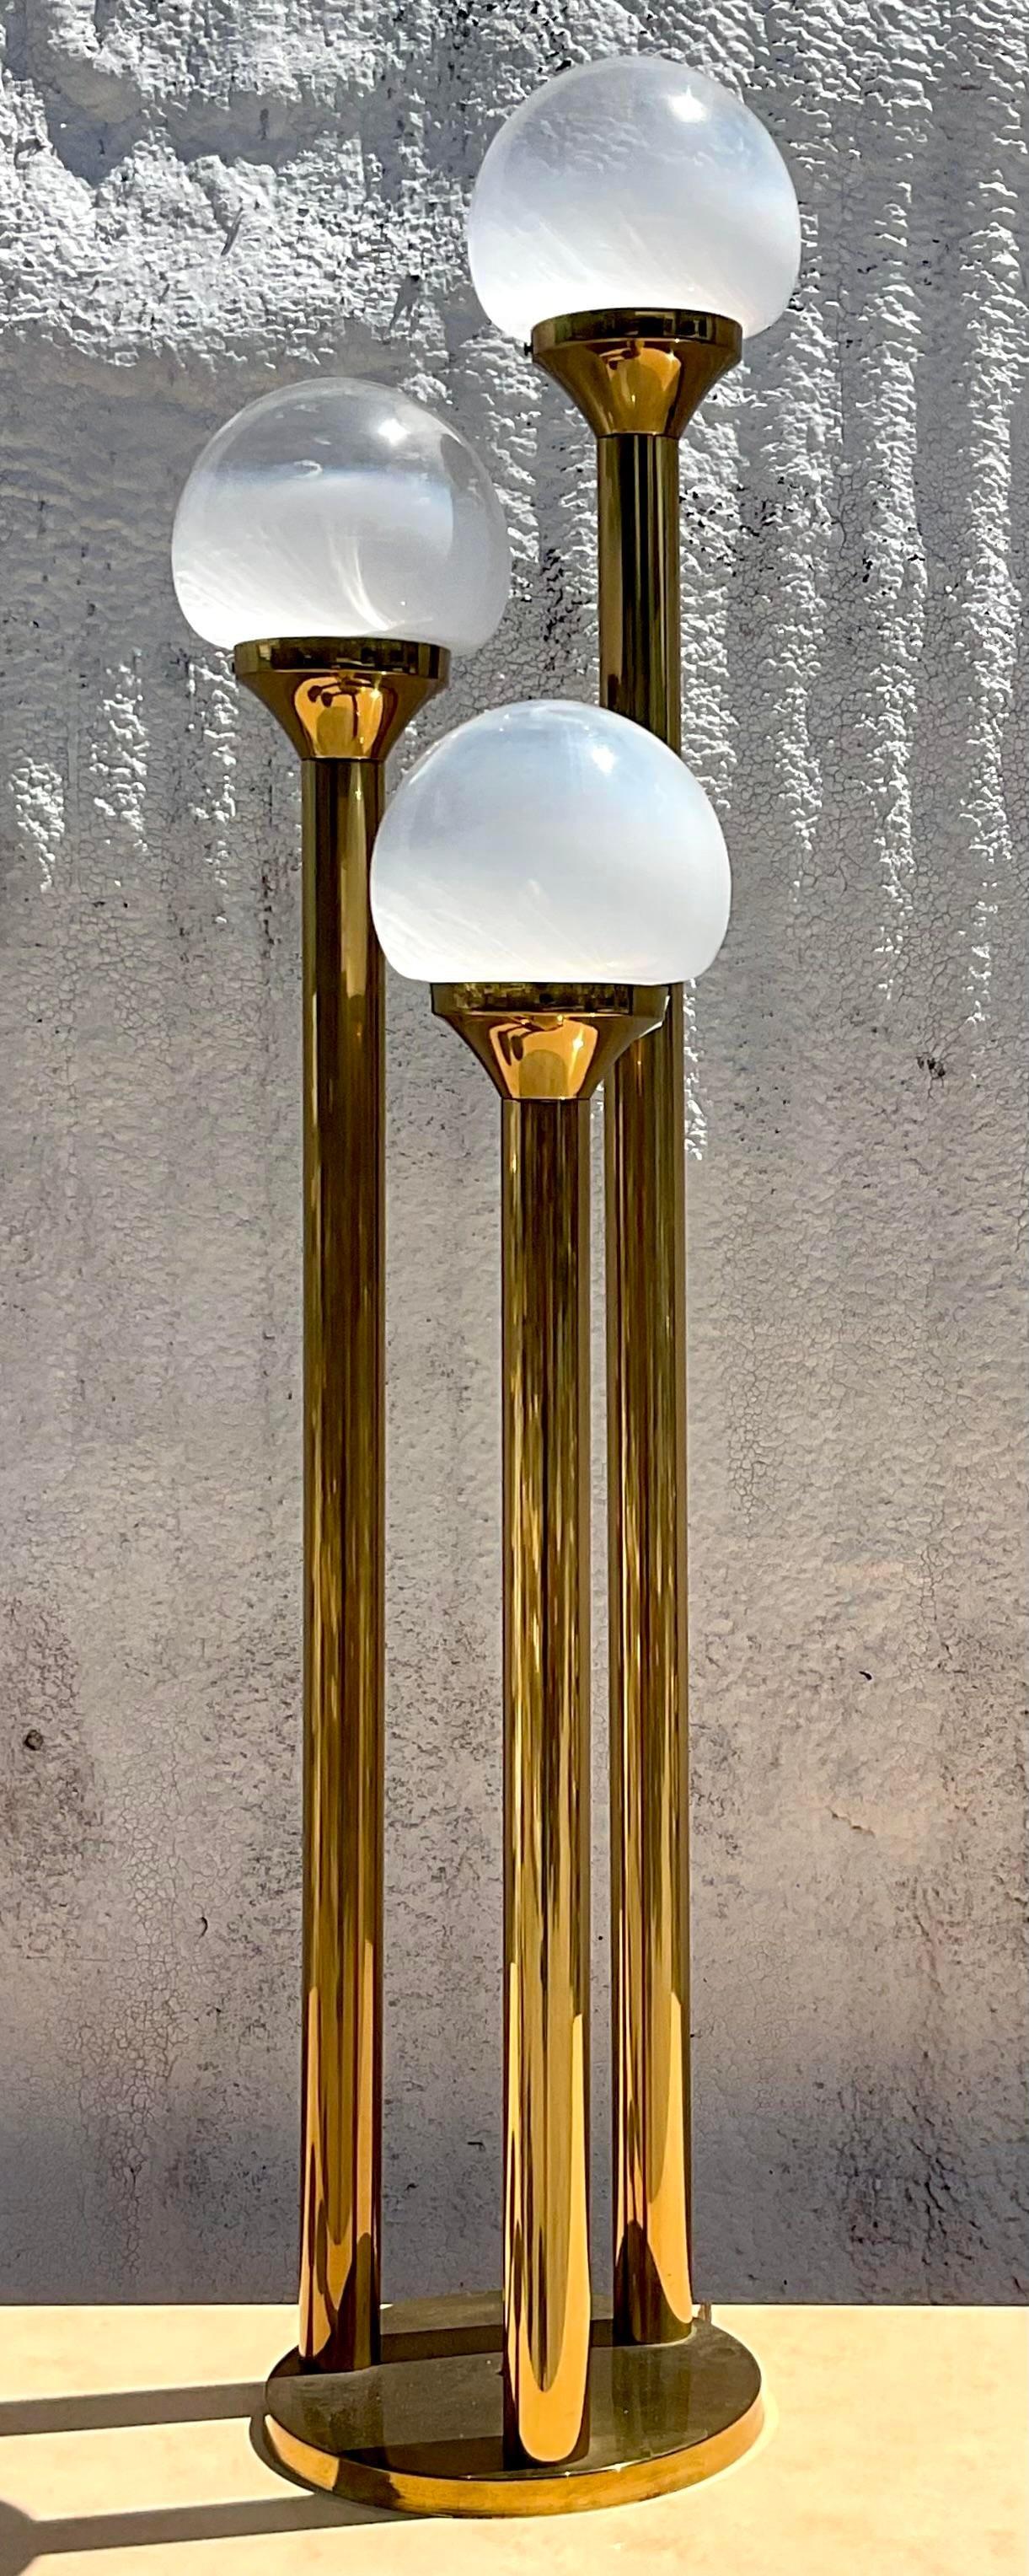 Fabriquée dans la tradition de l'art italien : D'après le modèle Vintage Mezzaga Murano Three Globe Lamp. Infusez votre espace avec l'élégance européenne, en se mélangeant harmonieusement avec le style américain pour un accent d'éclairage